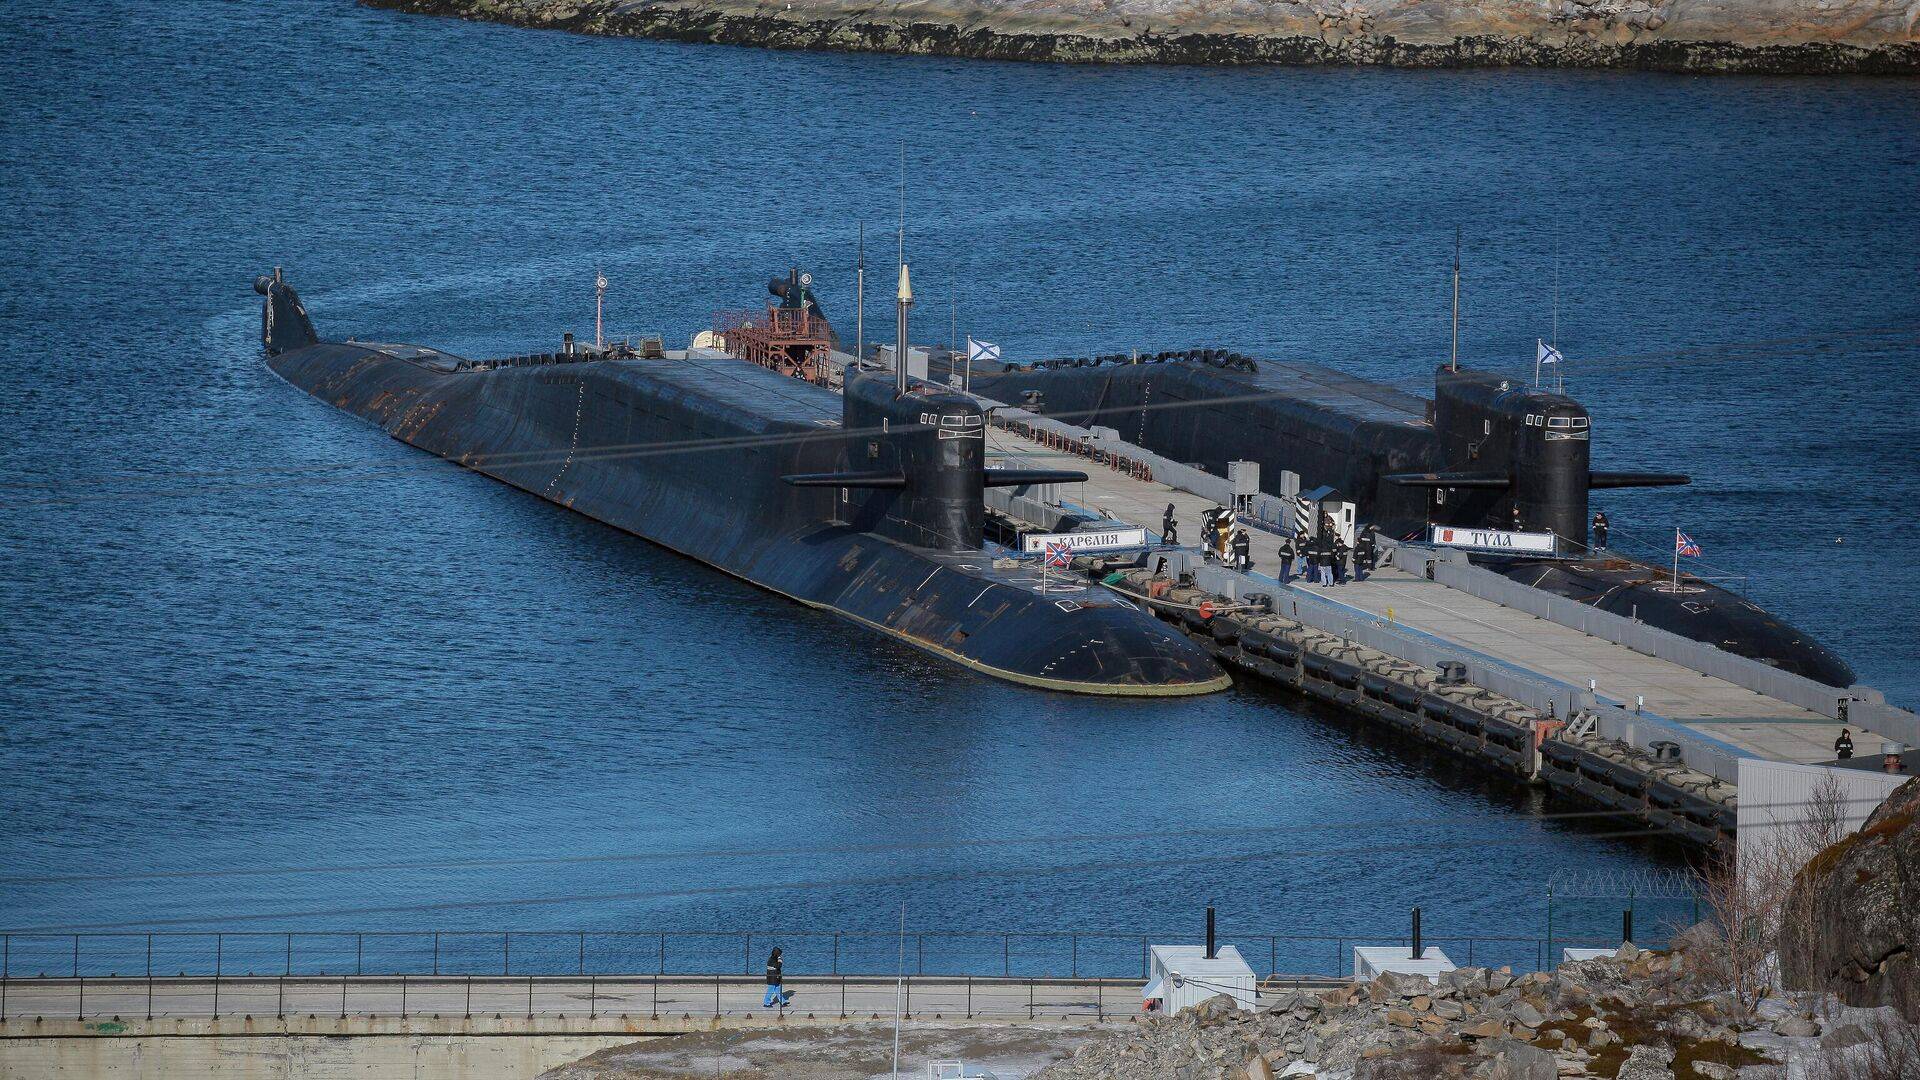 Подводная лодка проекта 971 щука-б: технические характеристики (ттх) атомной многоцелевой субмарины, вооружение